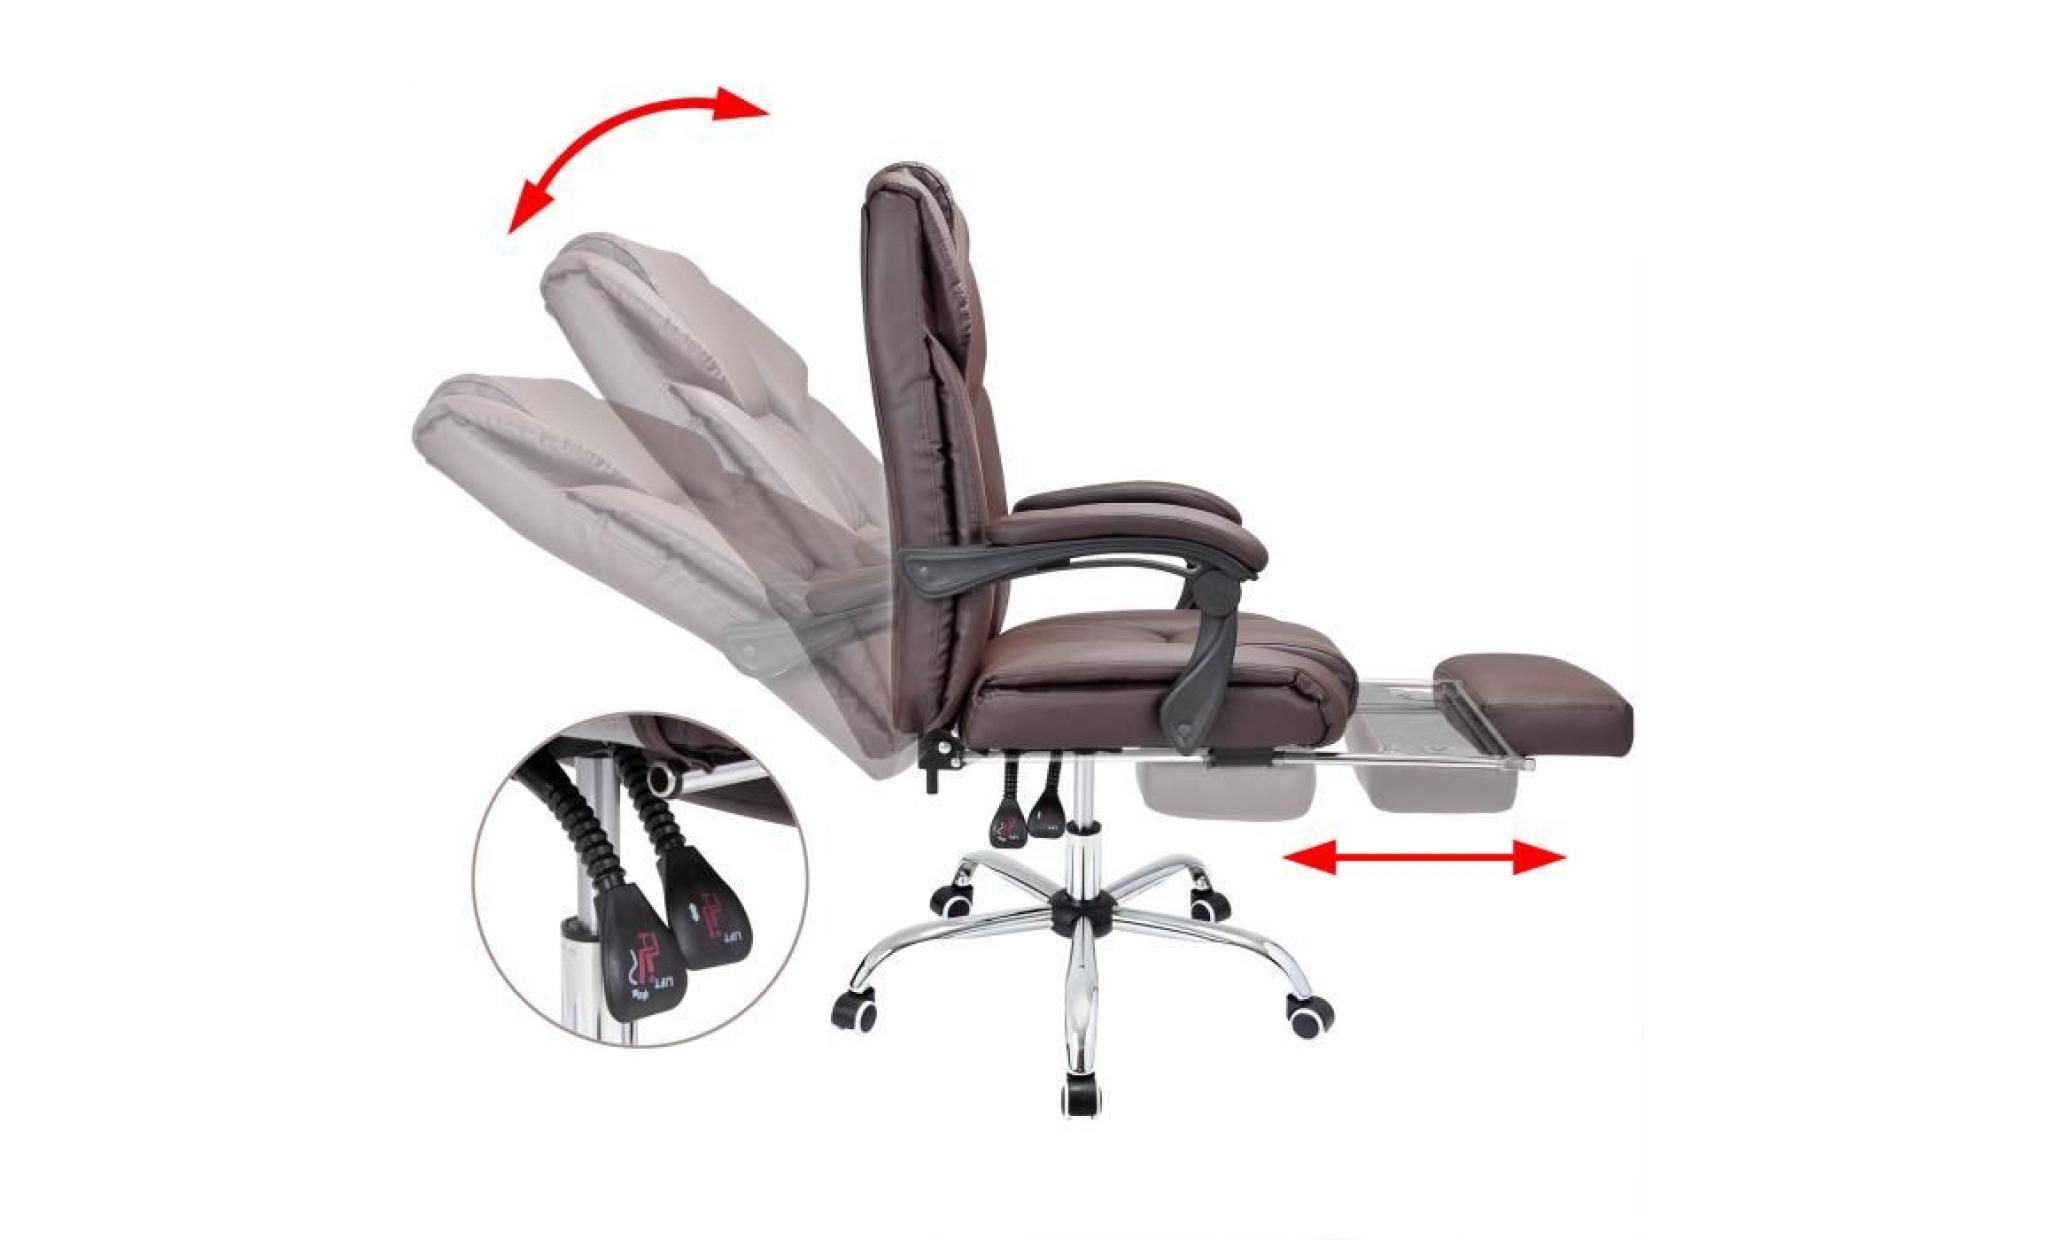 chaise de bureau fauteuil siège pivotant 360° brun rembourré repose pieds pas cher